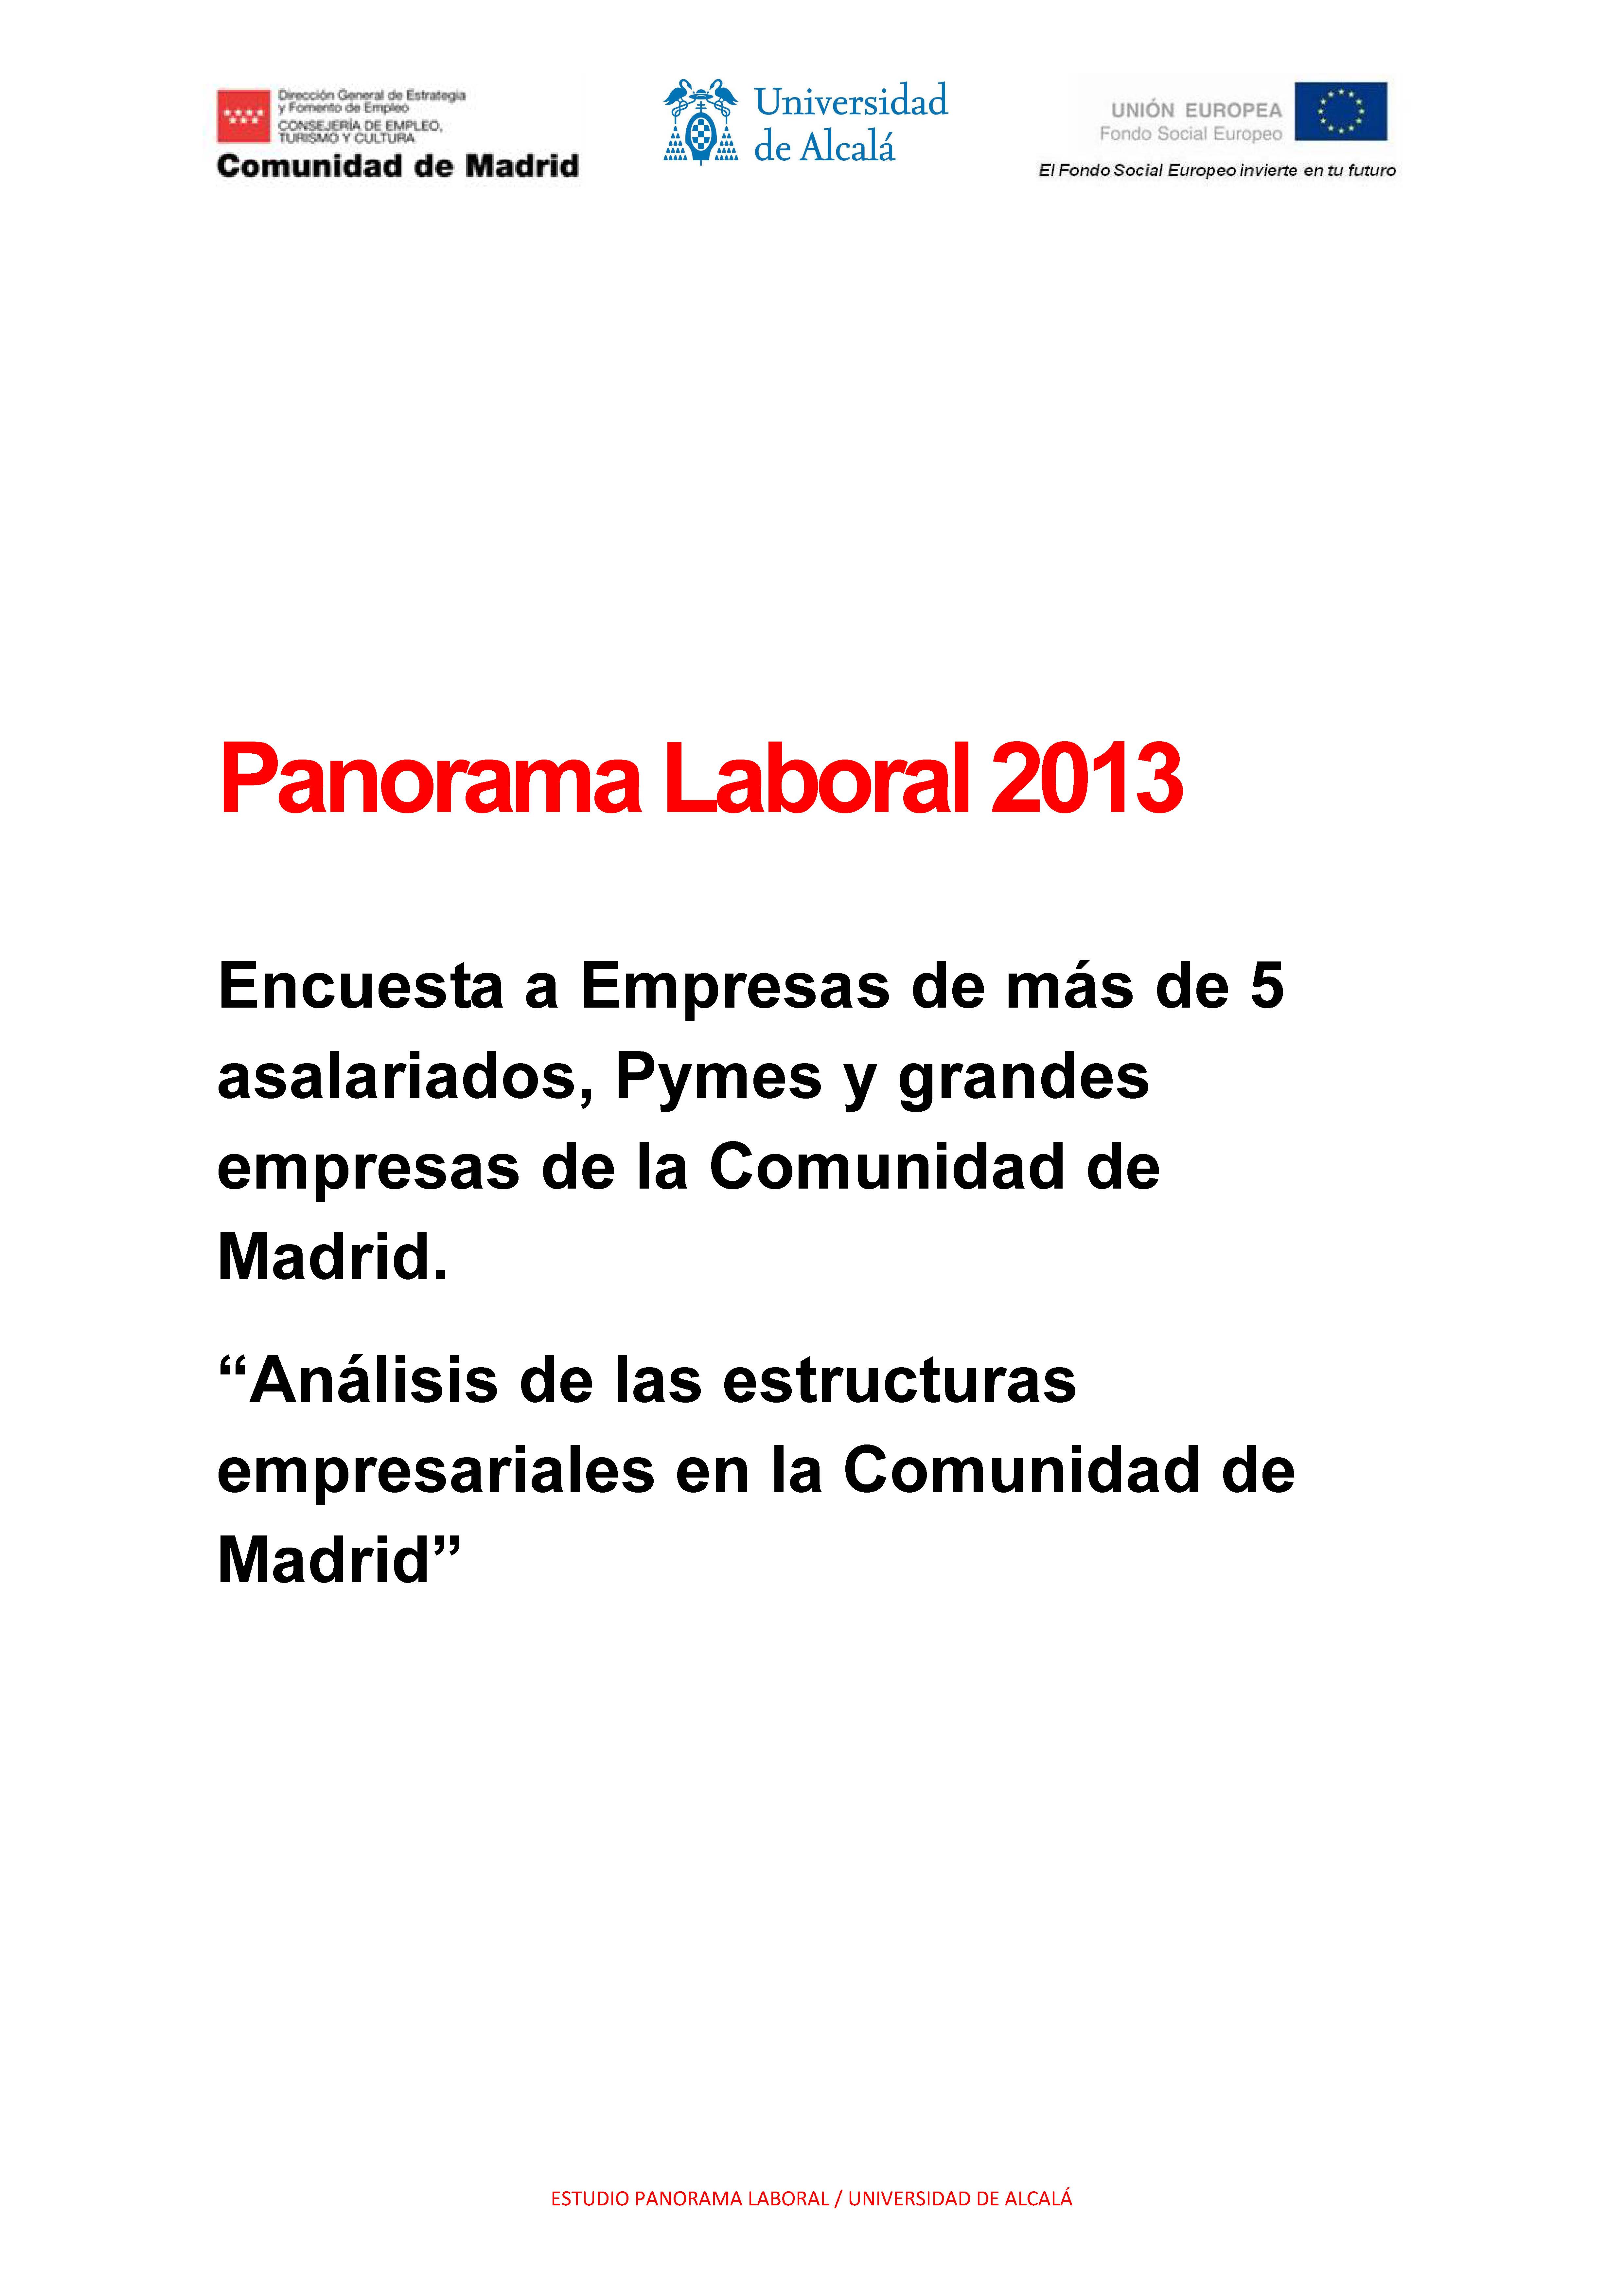 Portada de Panorama Laboral 2013 "Encuesta a Empresas de más de 5 asalariados, Pymes y grandes empresas de la Comunidad de Madrid. Análisis de las estructuras empresariales en la Comunidad de Madrid".